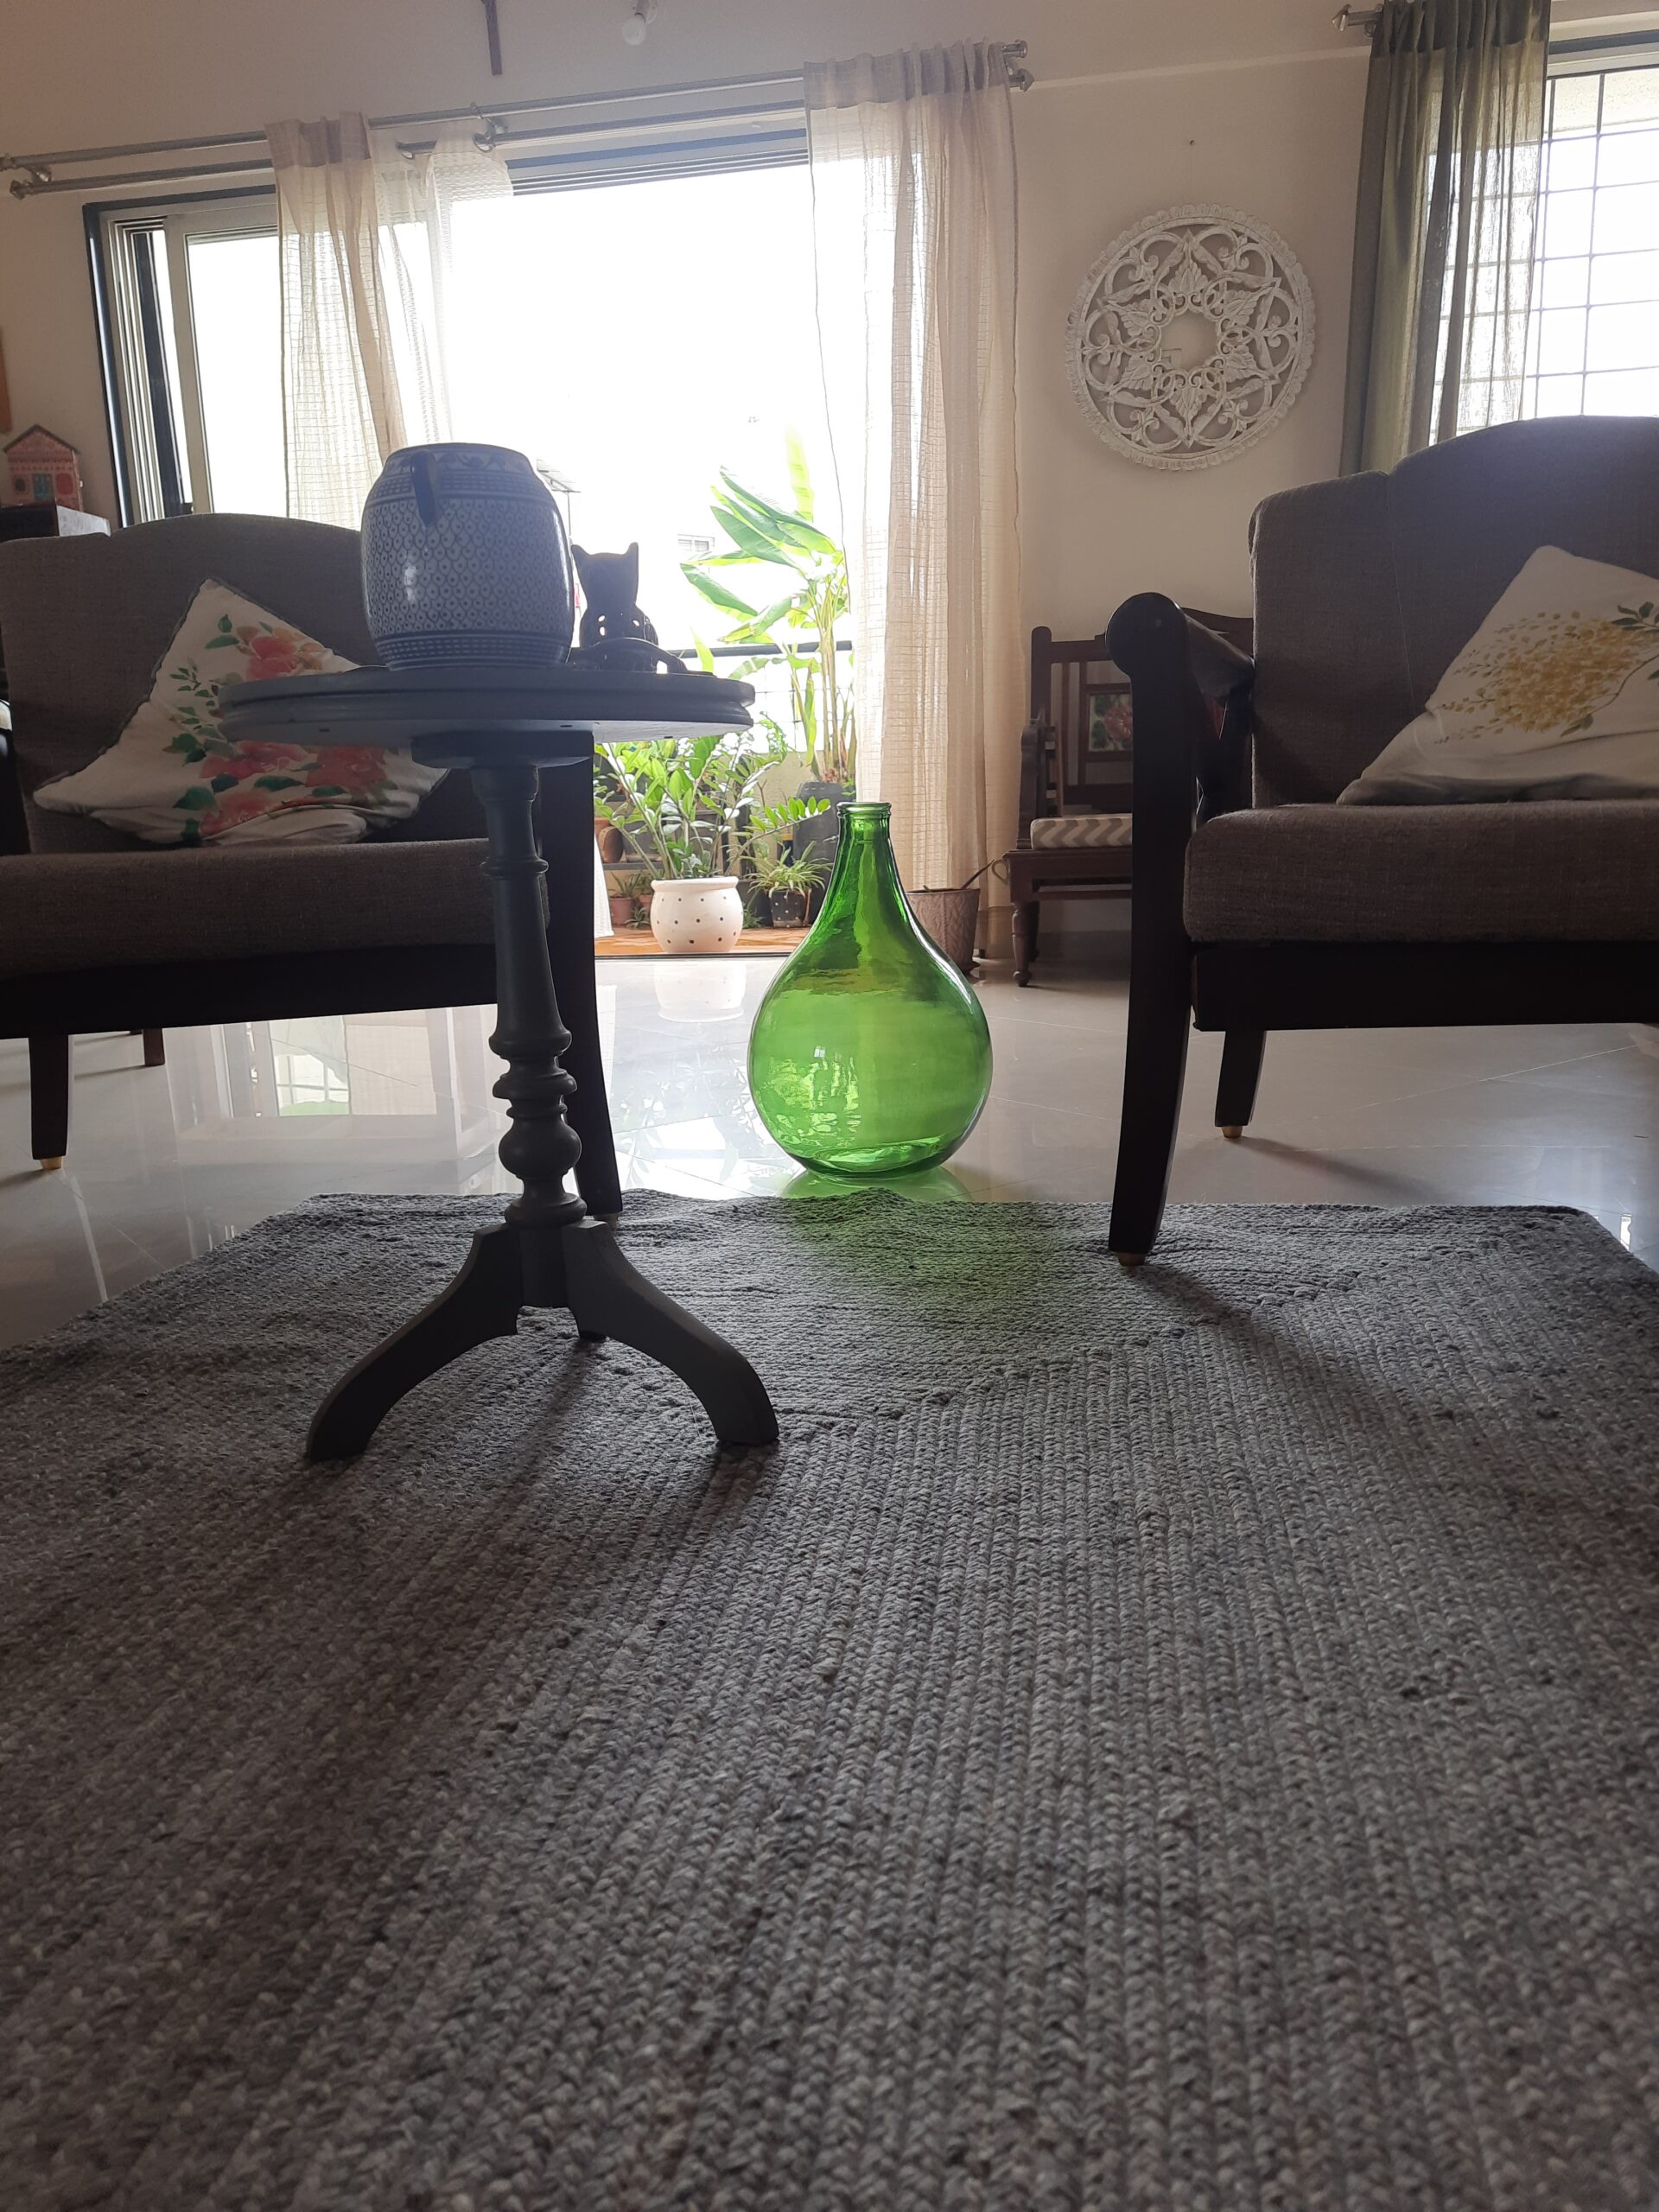 Demijohns in Indian Decor | Demijohn wine bottle at the living room